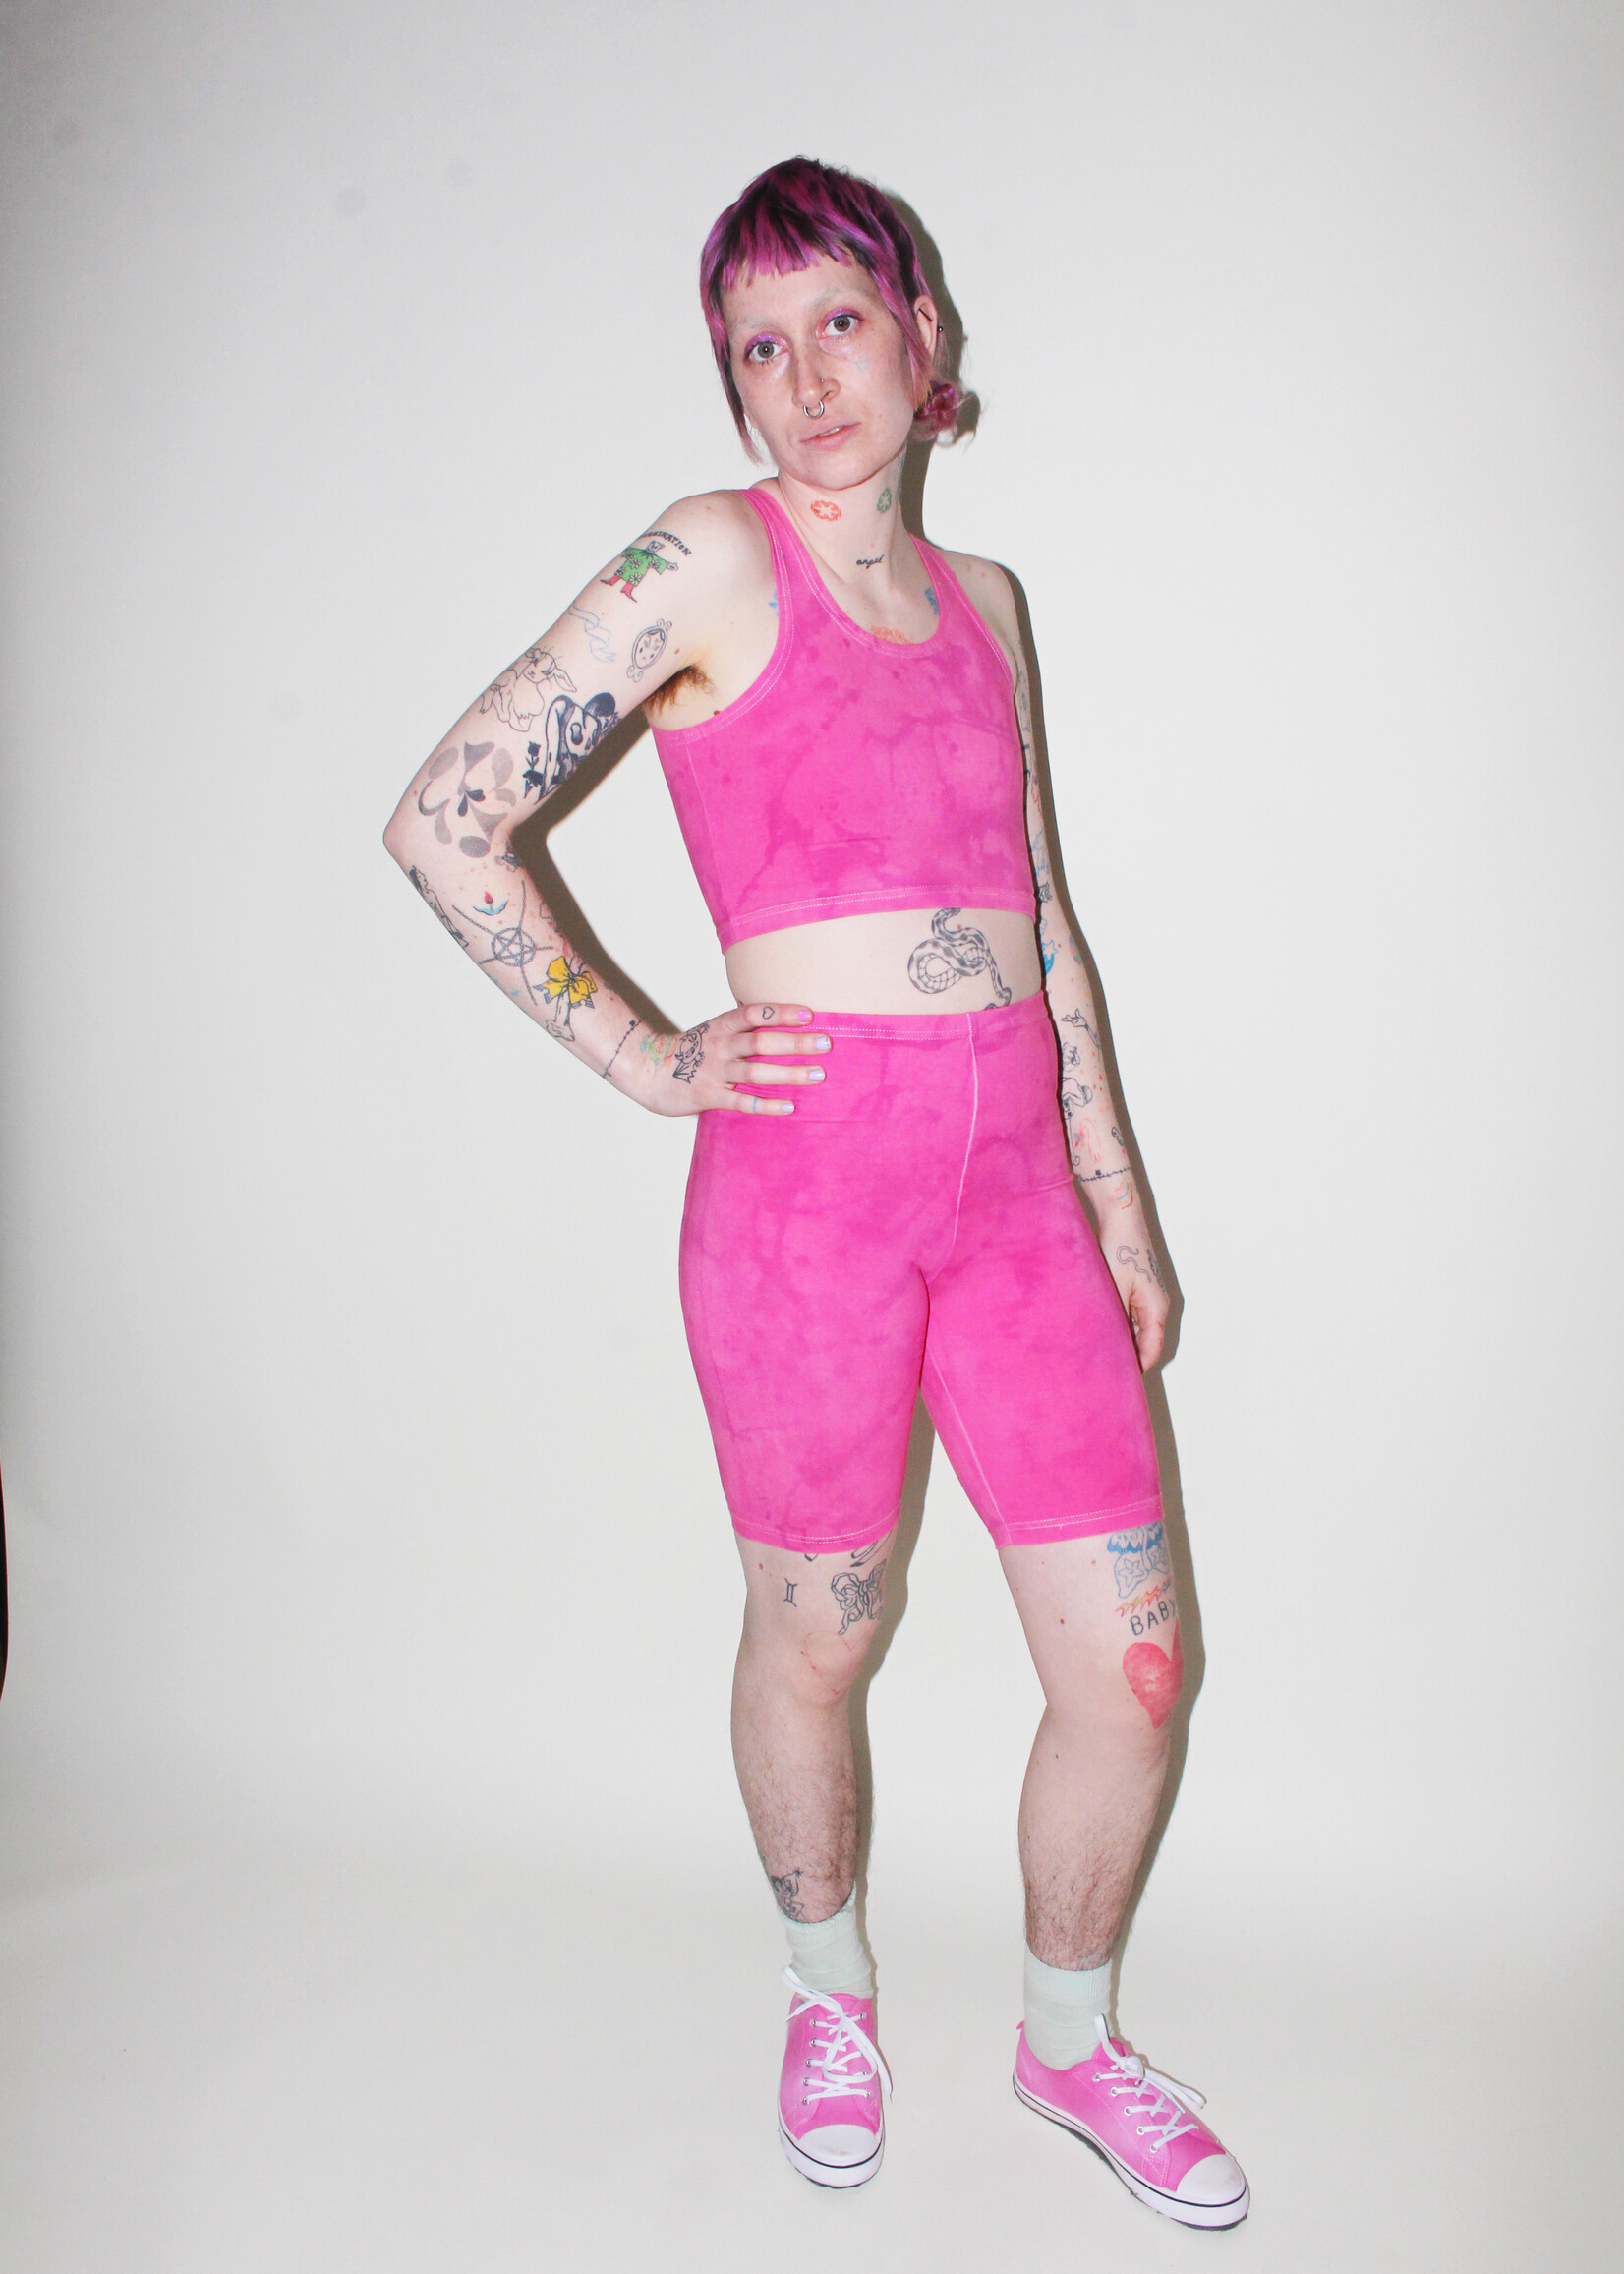 Studio Citizen Studio Citizen Bike Shorts in Pink Dye